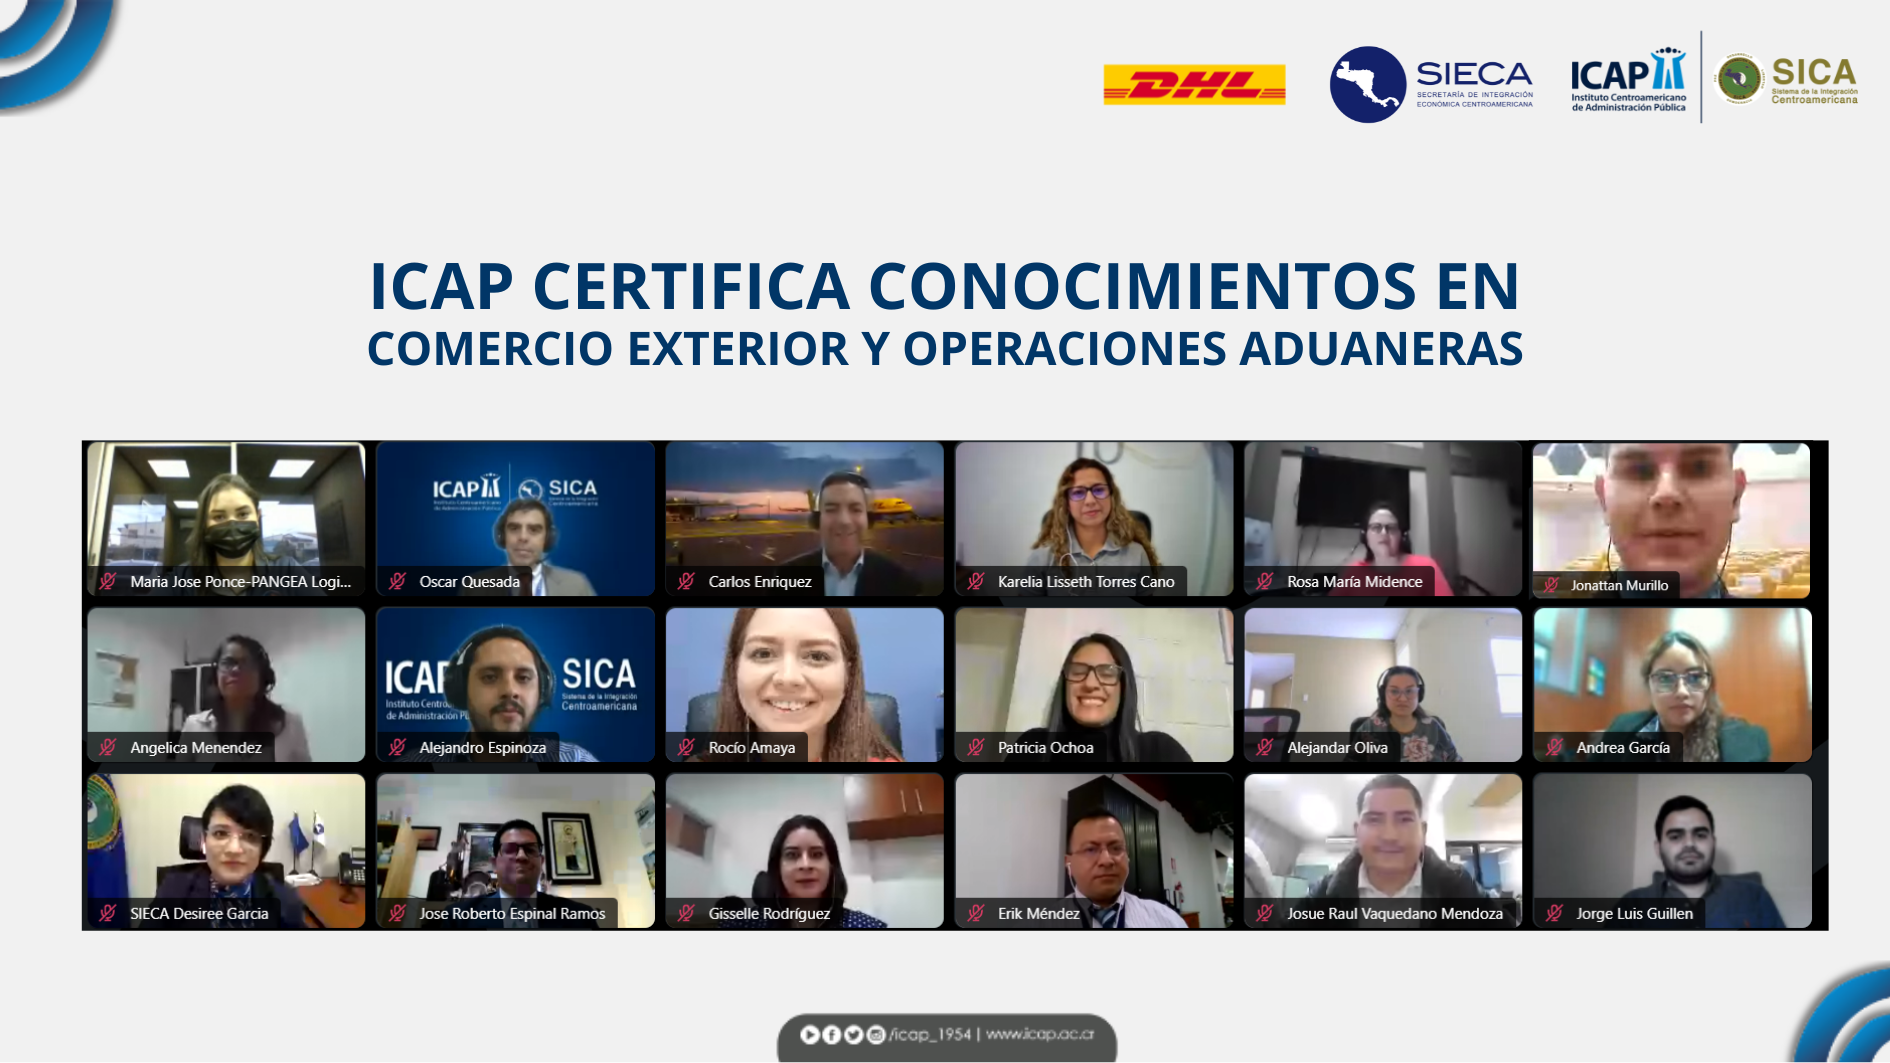 ICAP certifica conocimientos en comercio exterior y operaciones aduaneras